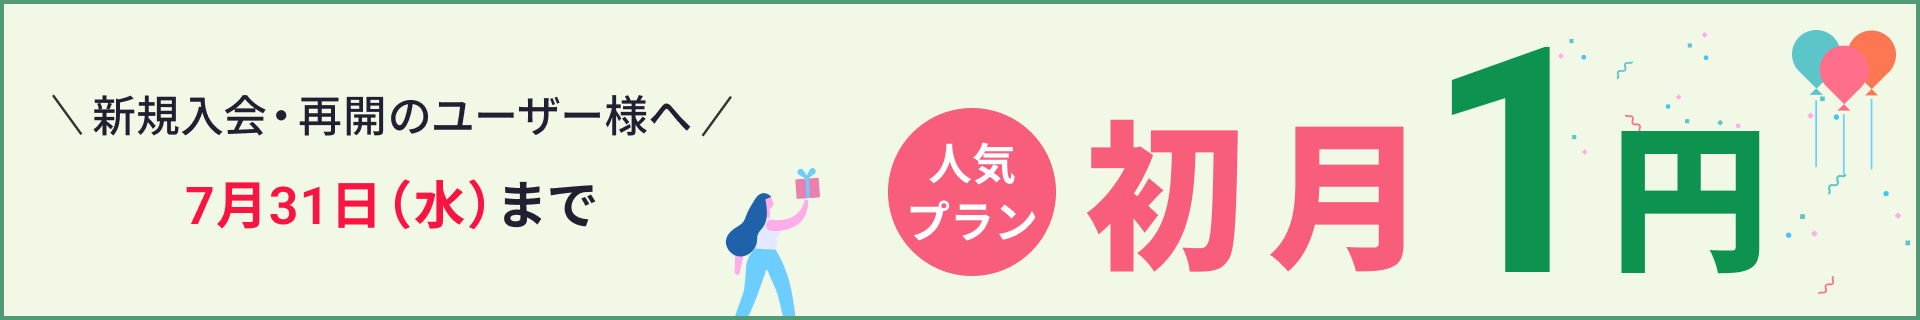 初月1円キャンペーン